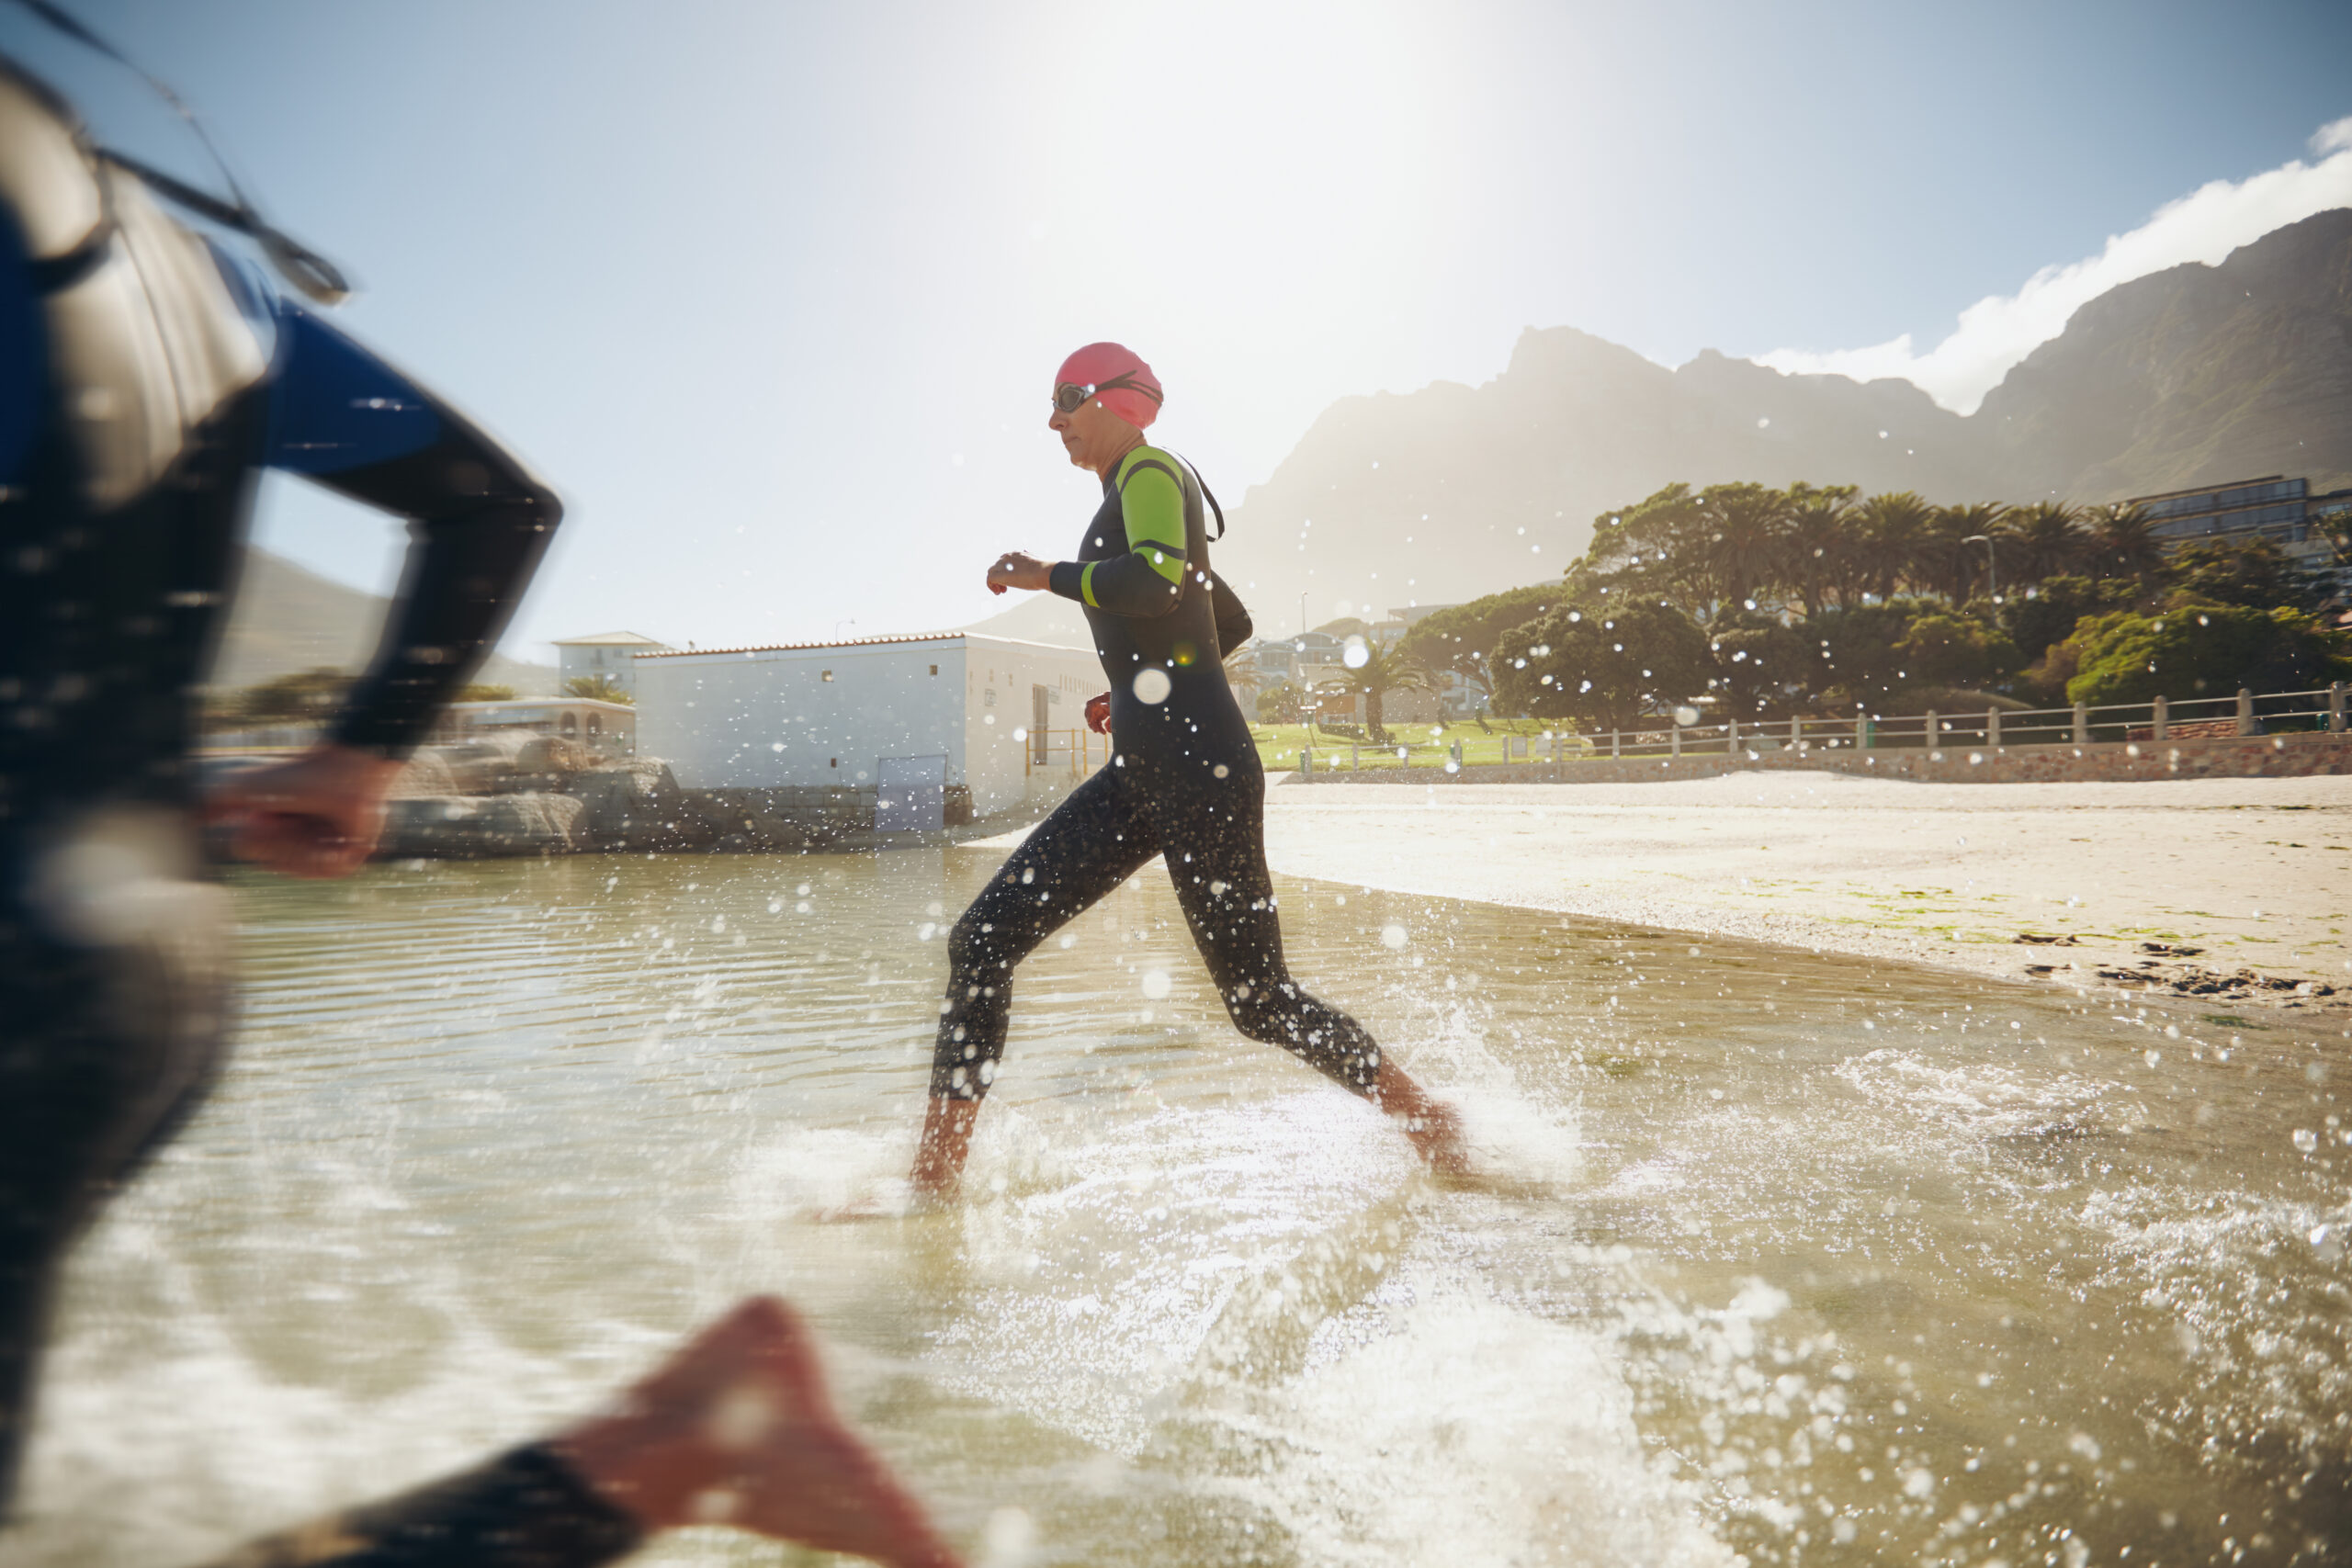 Ten inspirujący obrazek przedstawia z determinacją pływającego zawodnika triathlonowego, który pokonuje wody pełne wyzwań, oddając się bezwarunkowo swojej pasji. Jego siła i elegancja w ruchu wody stanowią doskonałą ilustrację poświęcenia i wytrwałości potrzebnych do osiągnięcia sukcesu w tej wymagającej dyscyplinie sportu.